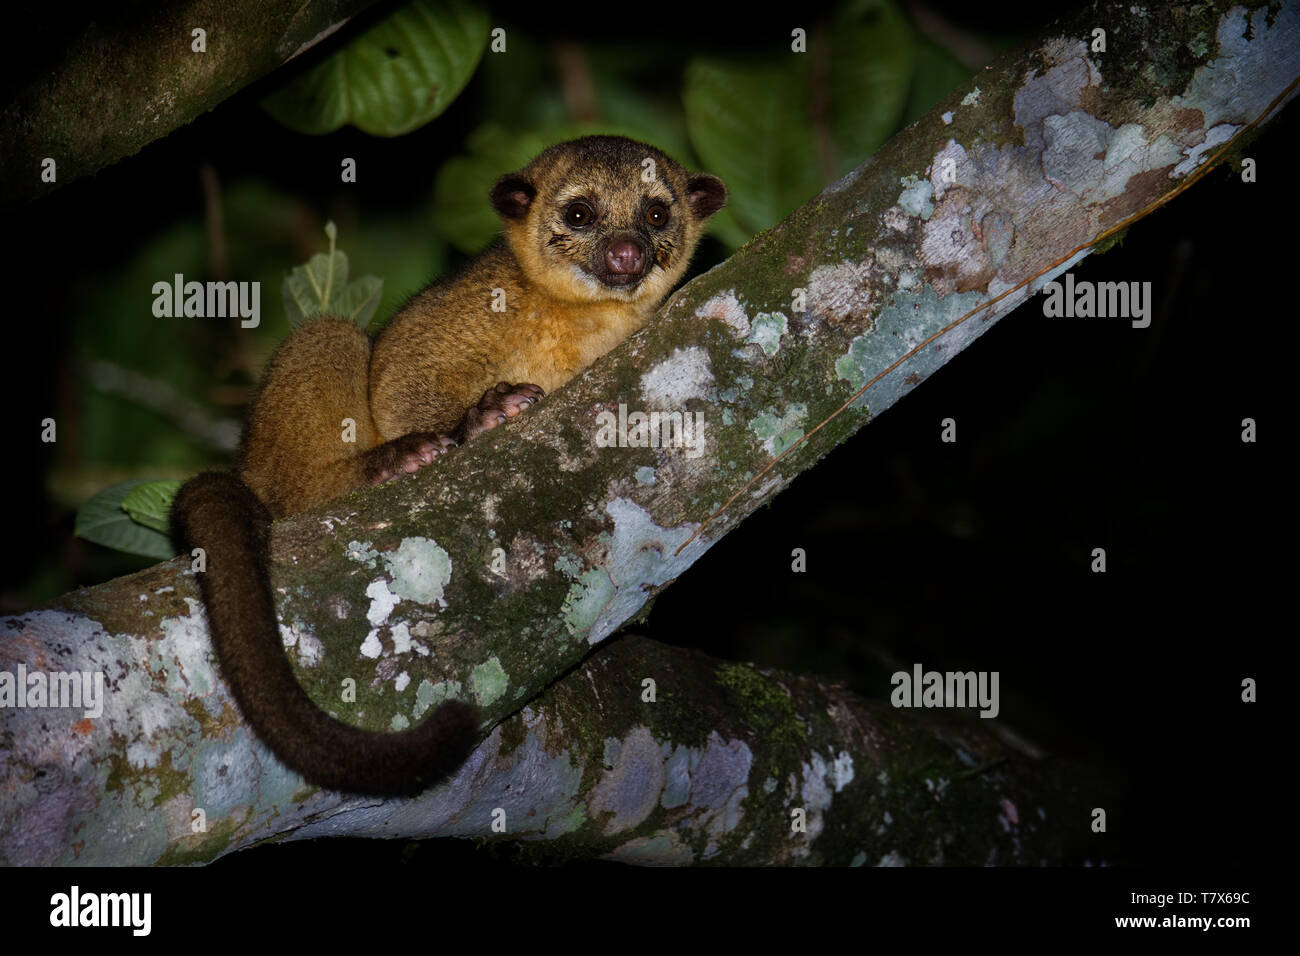 Kinkajou - Potos flavus, rainforest mammifère de la famille des Procyonidae olingos, coatis, ratons laveurs, et l'ringtail et cacomistle aussi connu. Banque D'Images